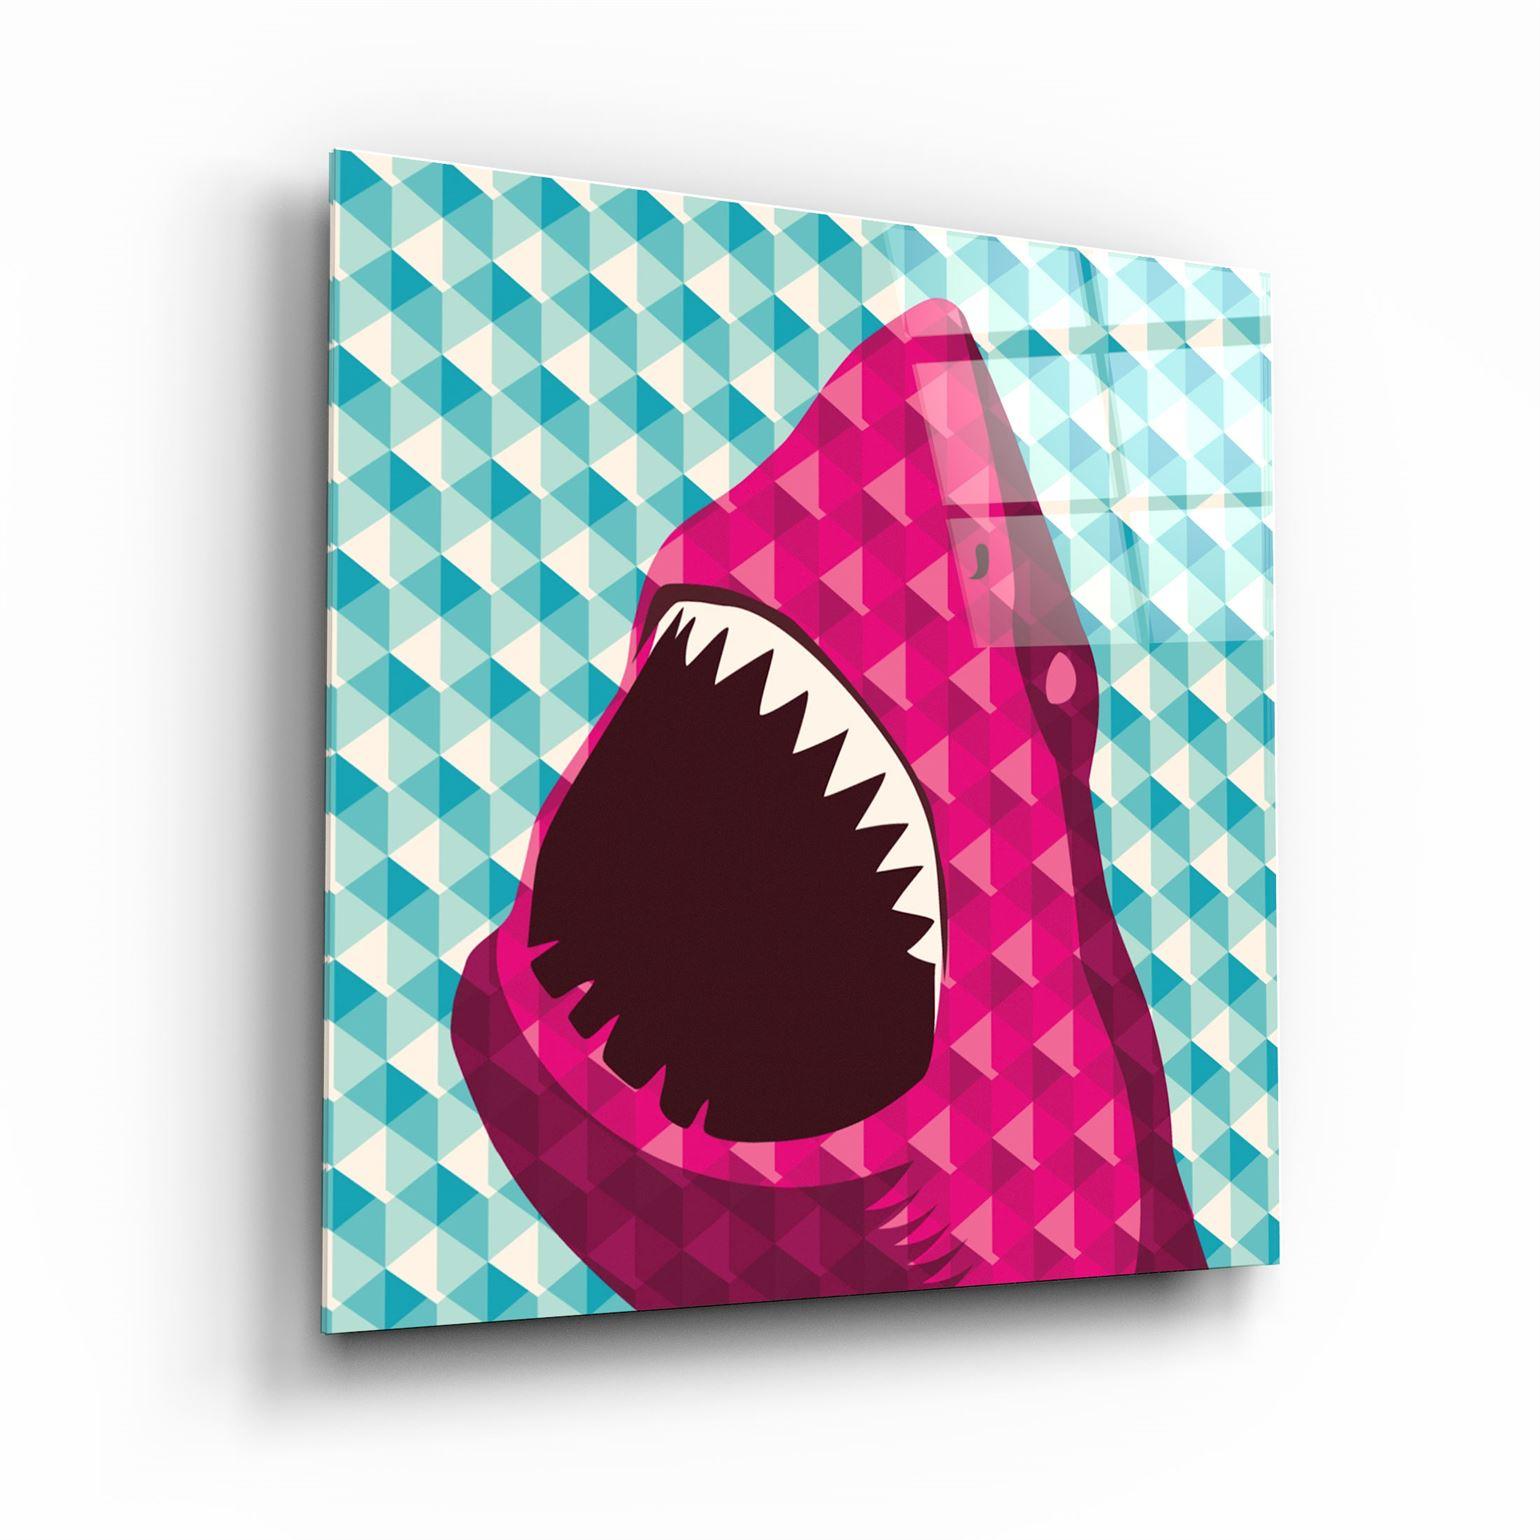 ・"Shark"・Glass Wall Art - ArtDesigna Glass Printing Wall Art